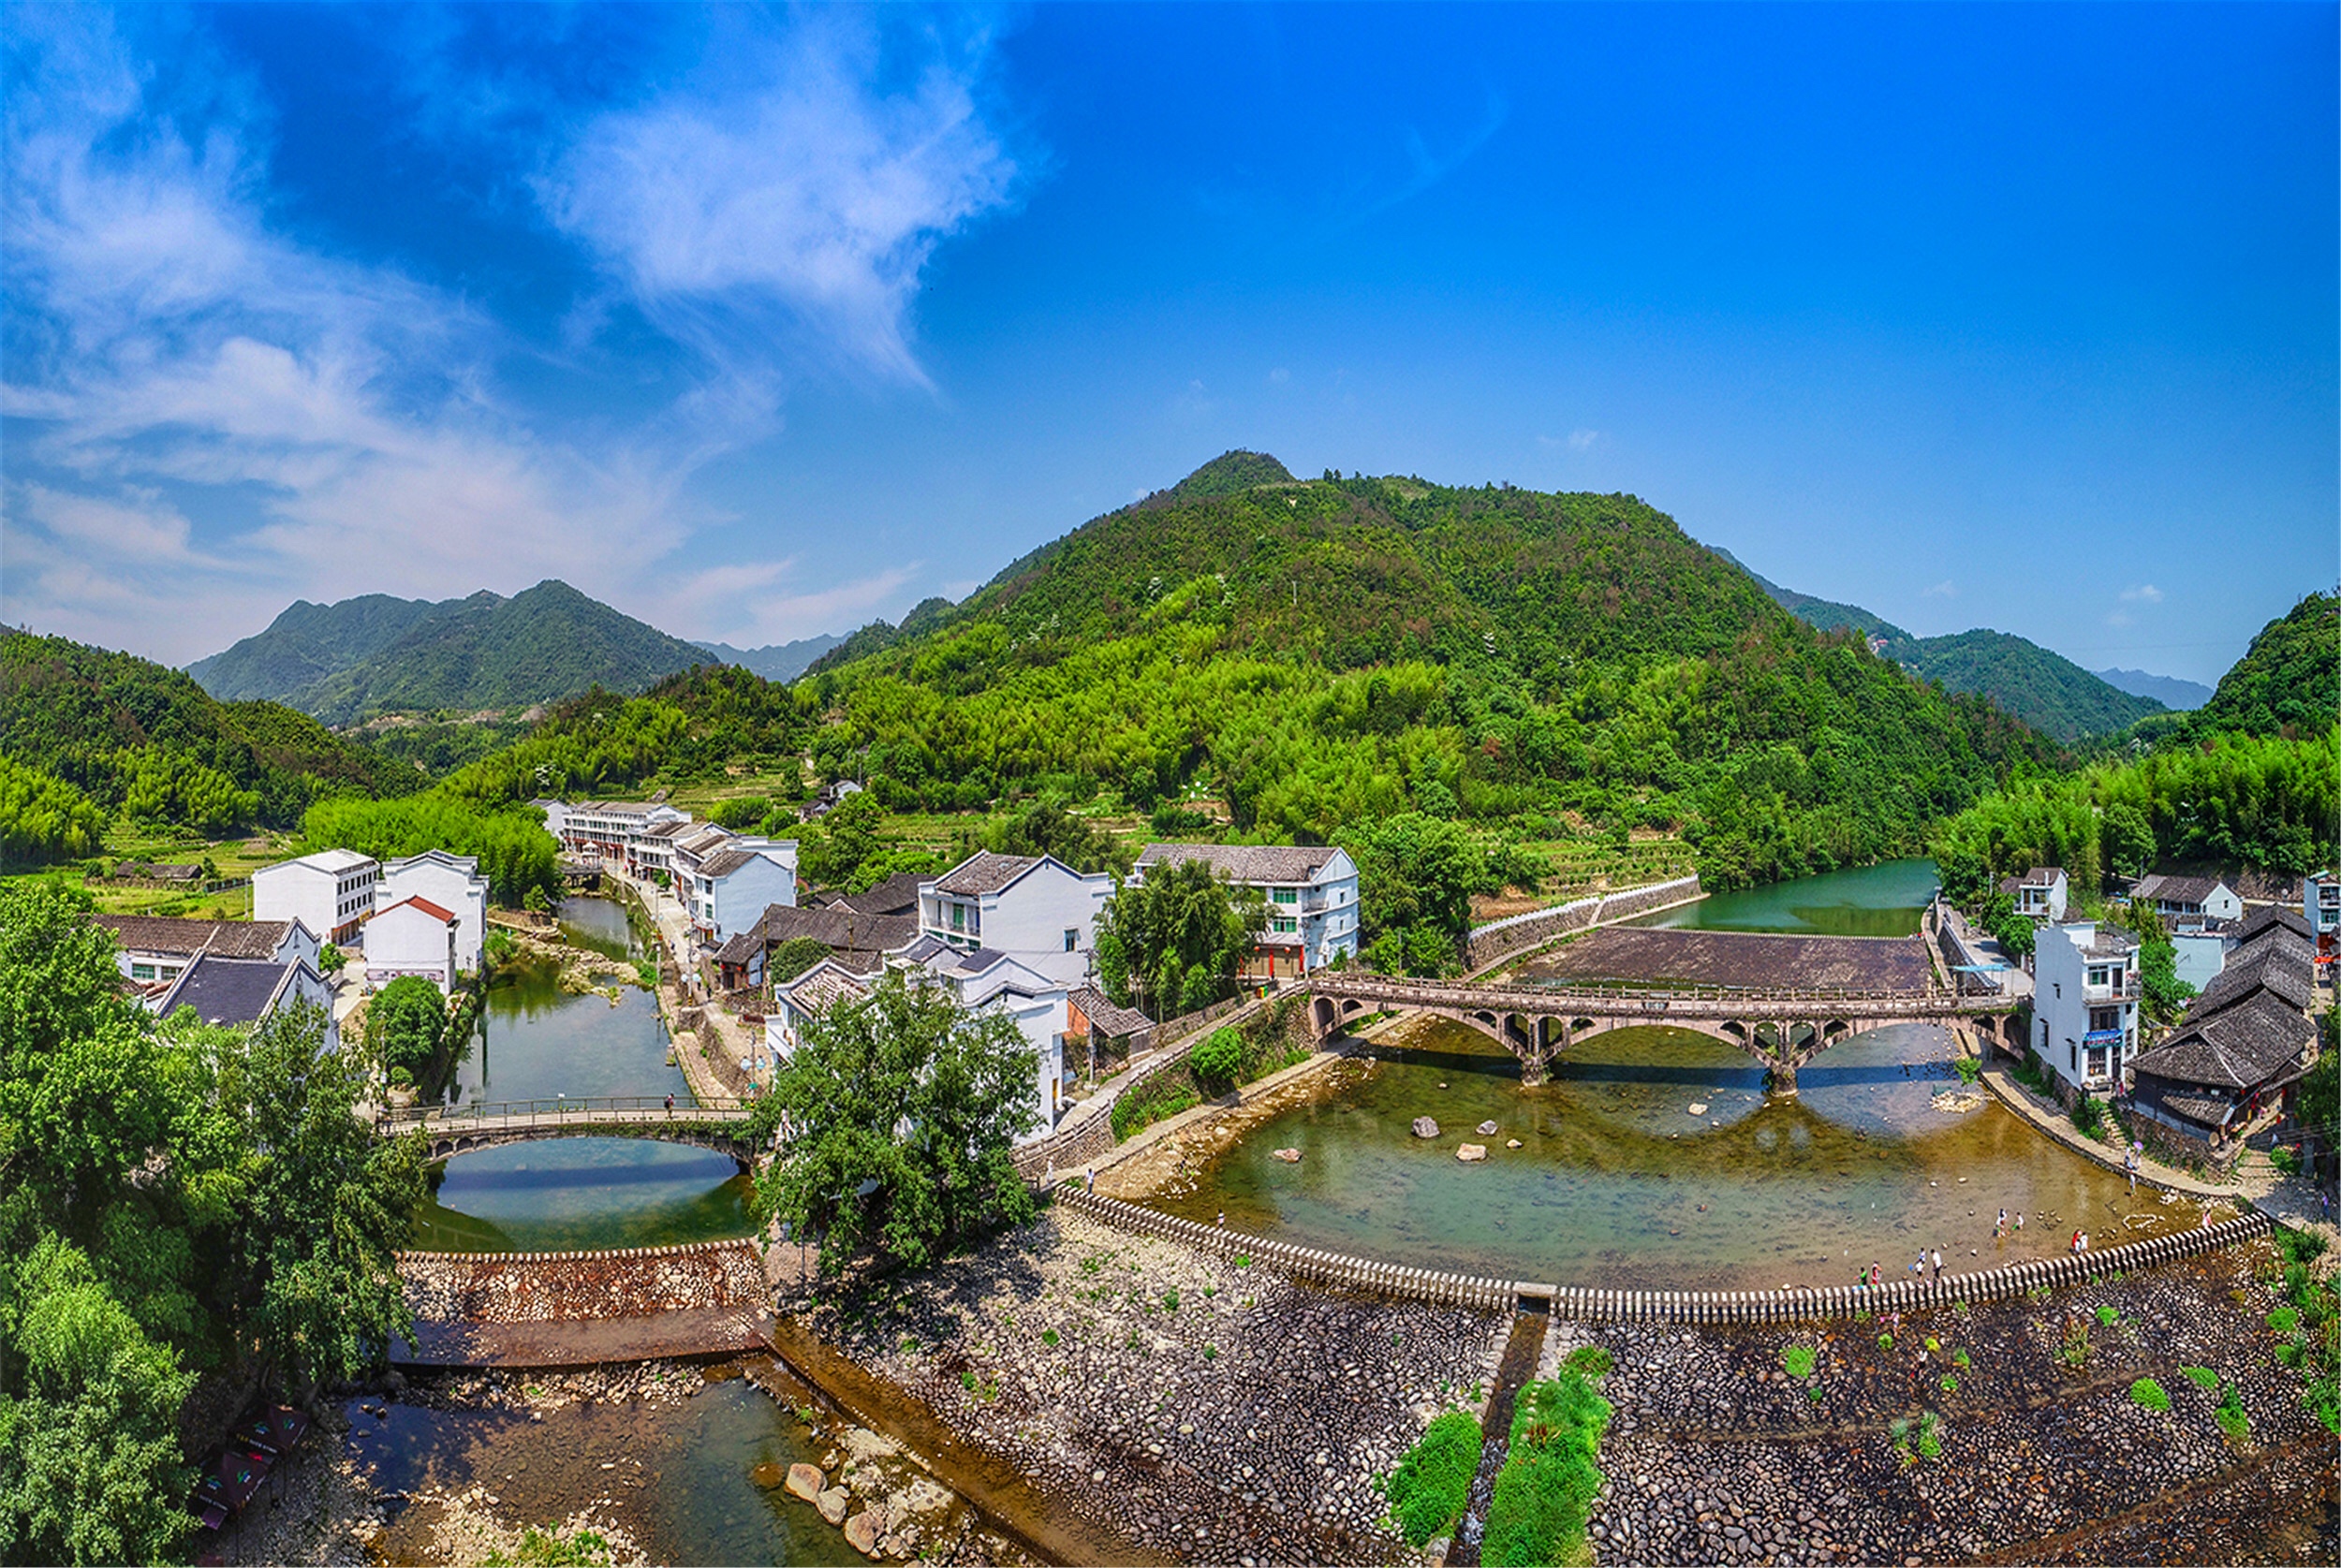 苍南县桥墩镇是一个具有百年历史的古镇,古称松山,始建于明万历年间